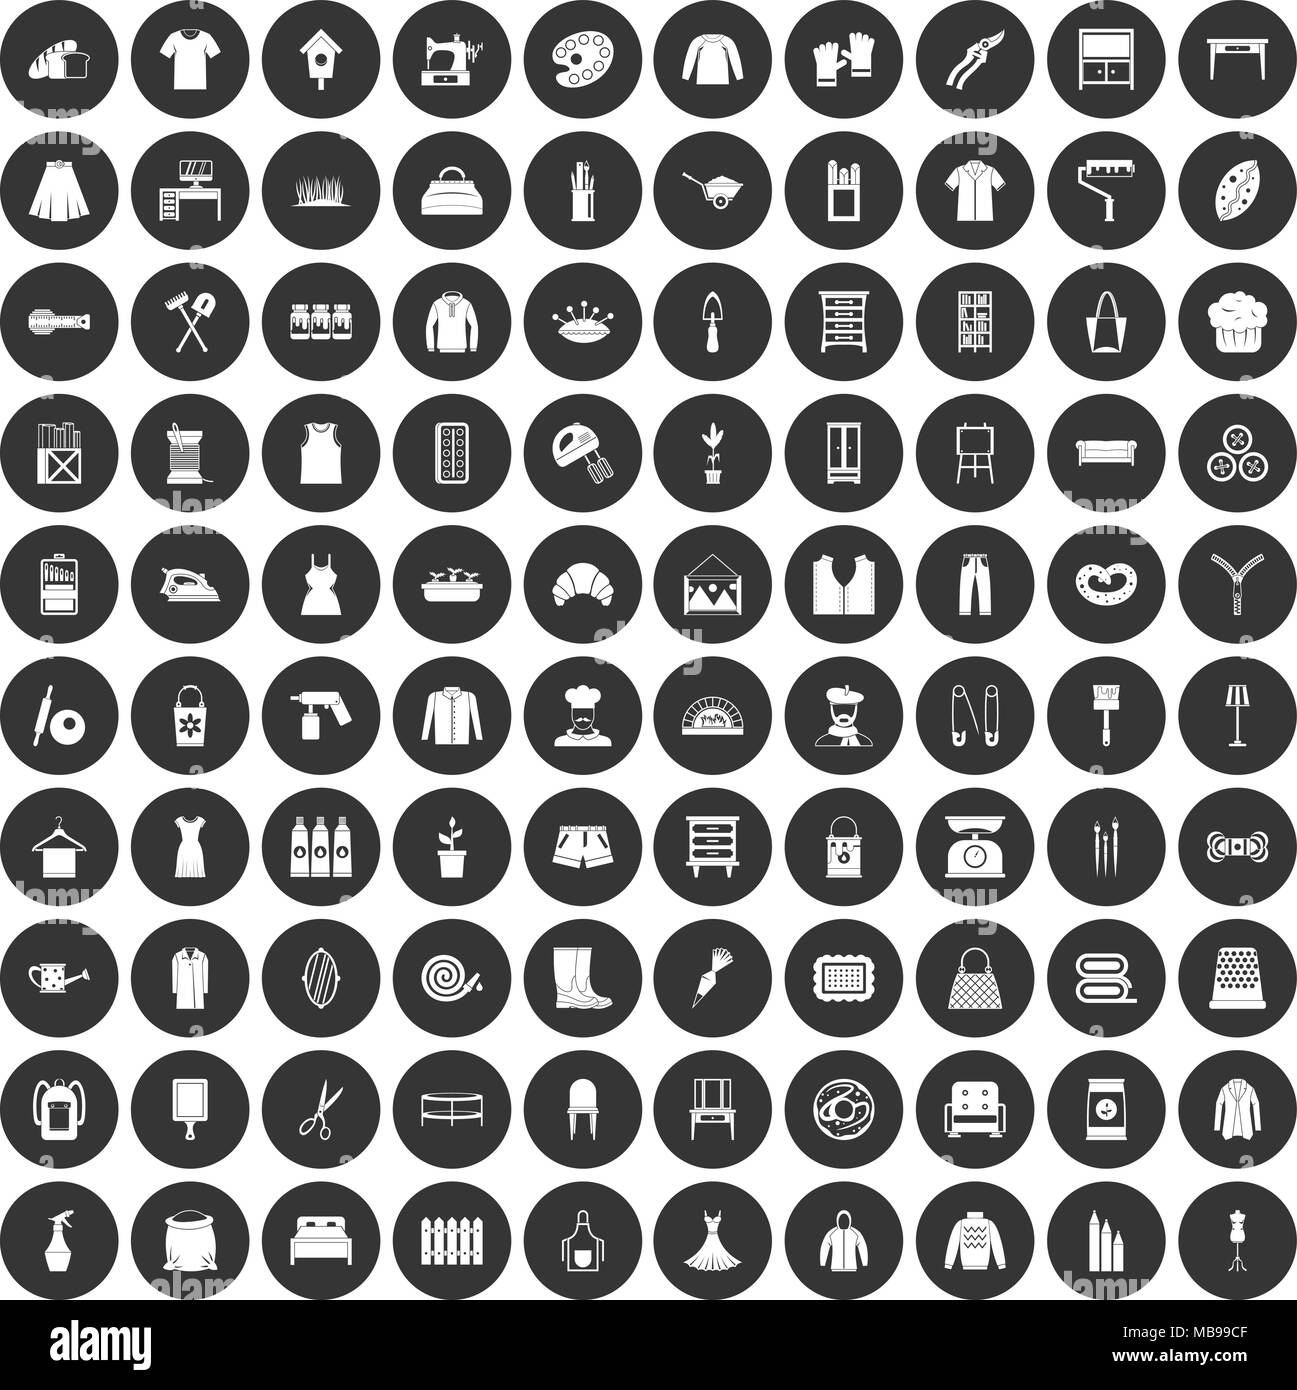 100 Handarbeit Icons Set schwarz Kreis Stock Vektor